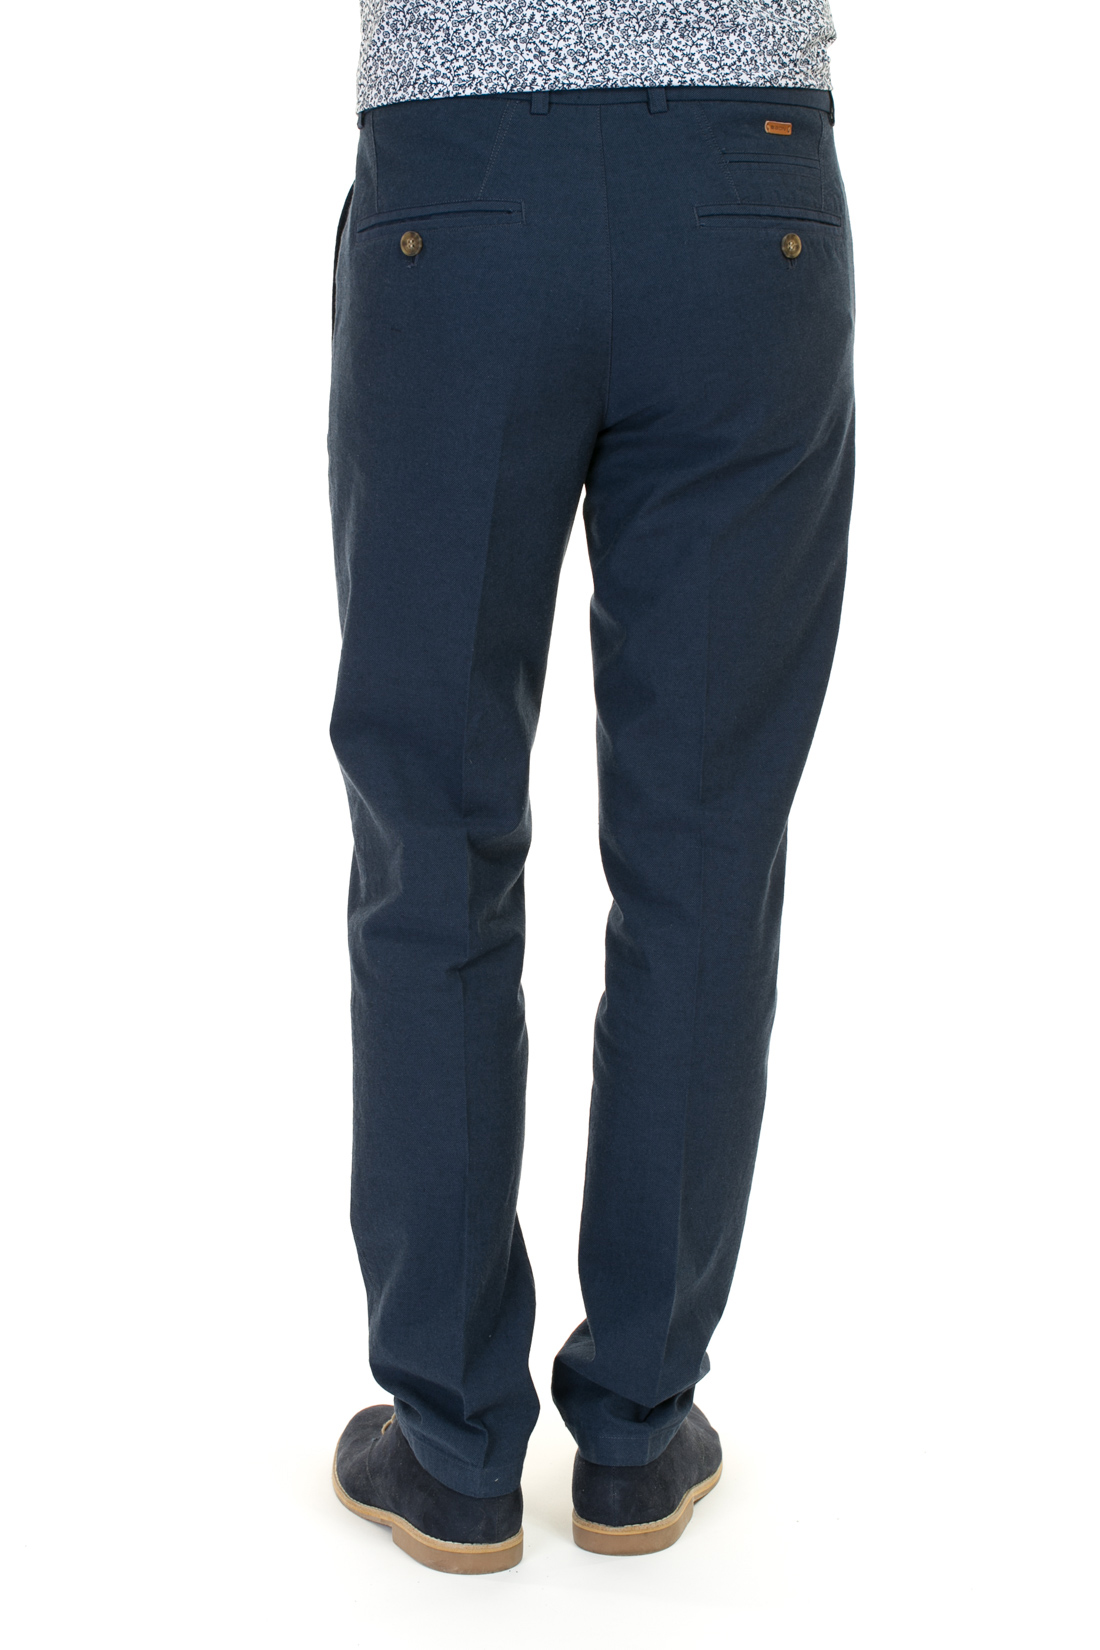 Хлопковые брюки (арт. baon B797008), размер XL, цвет синий Хлопковые брюки (арт. baon B797008) - фото 2